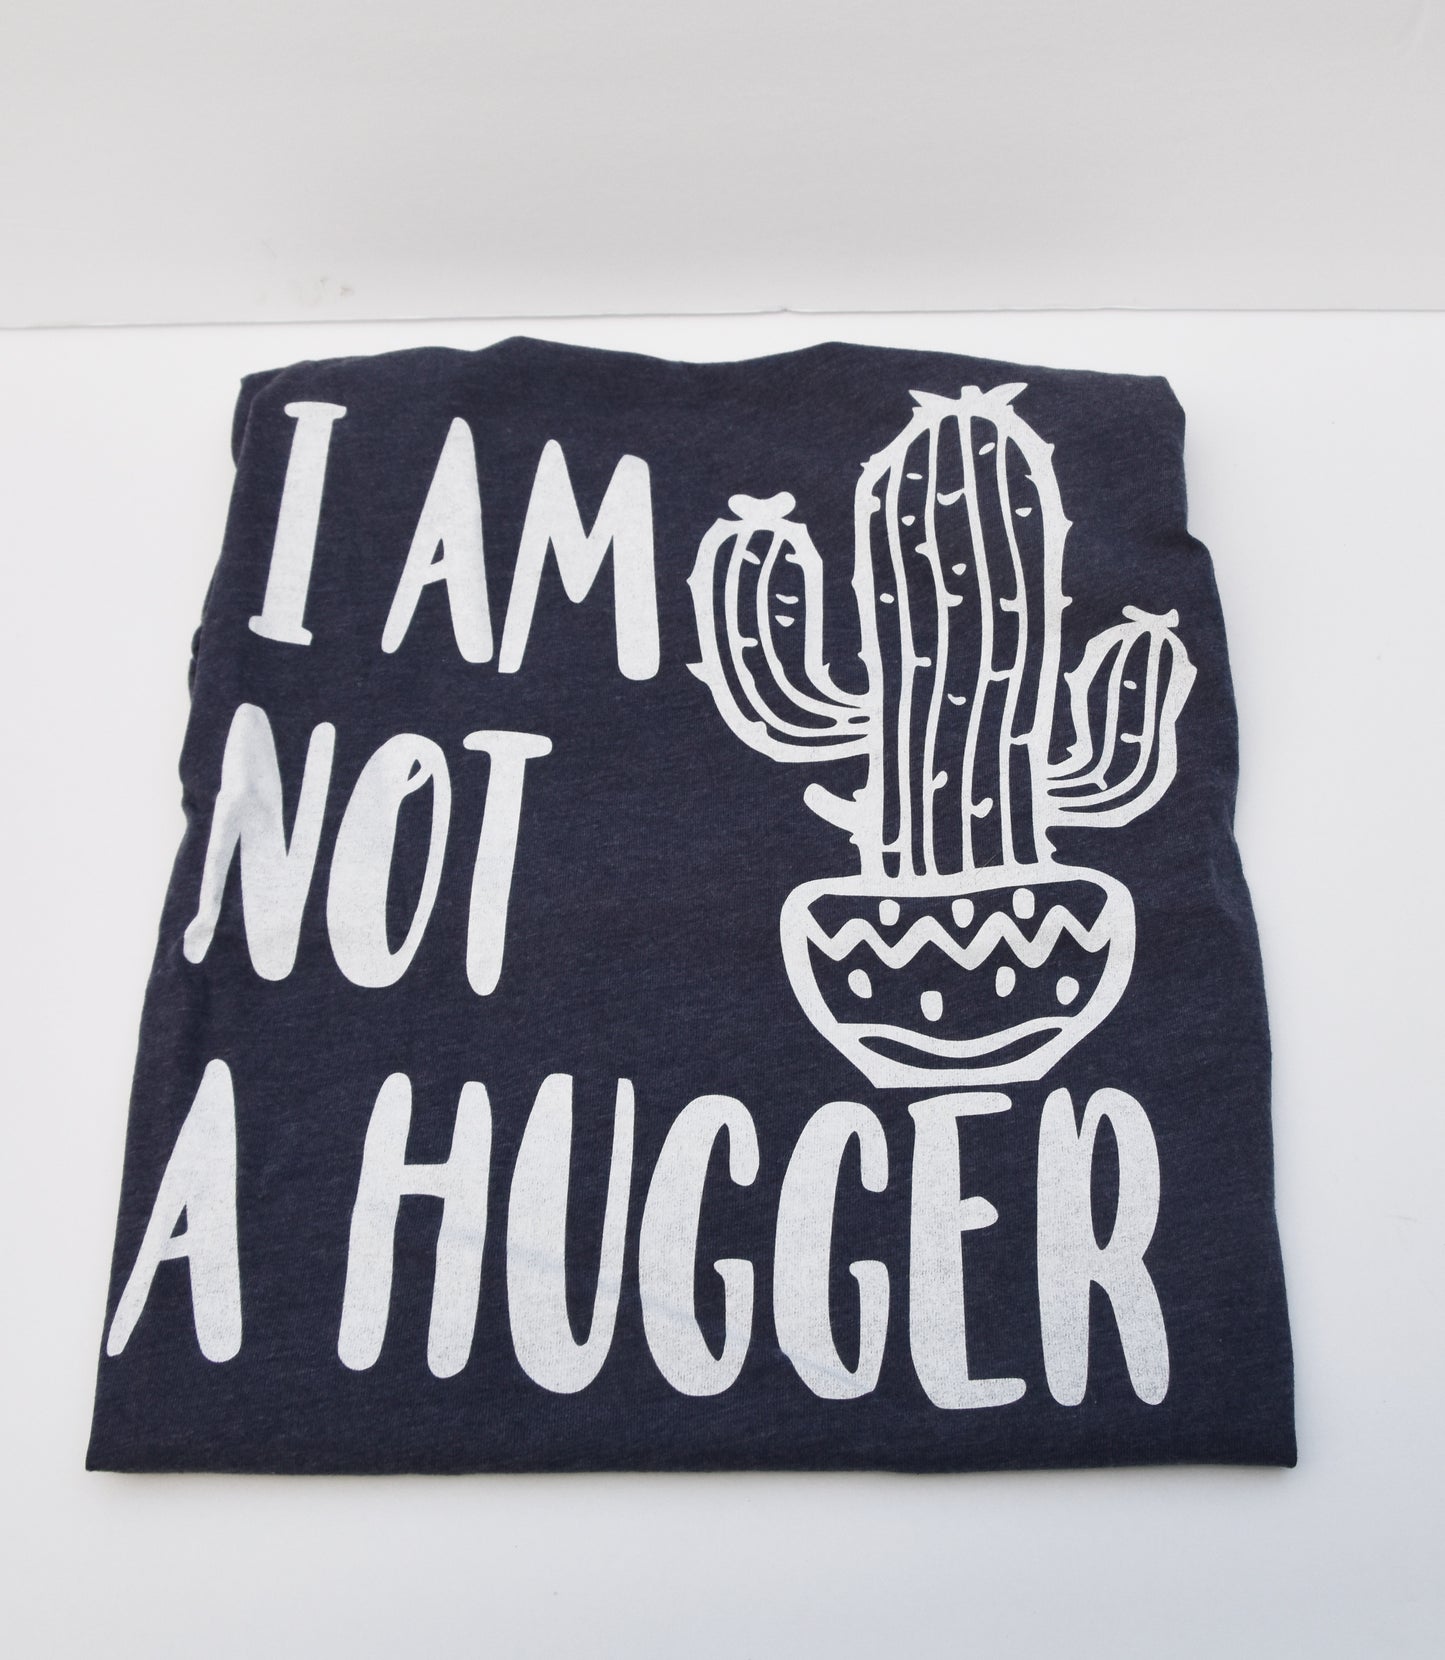 "I am not a hugger" t-shirt